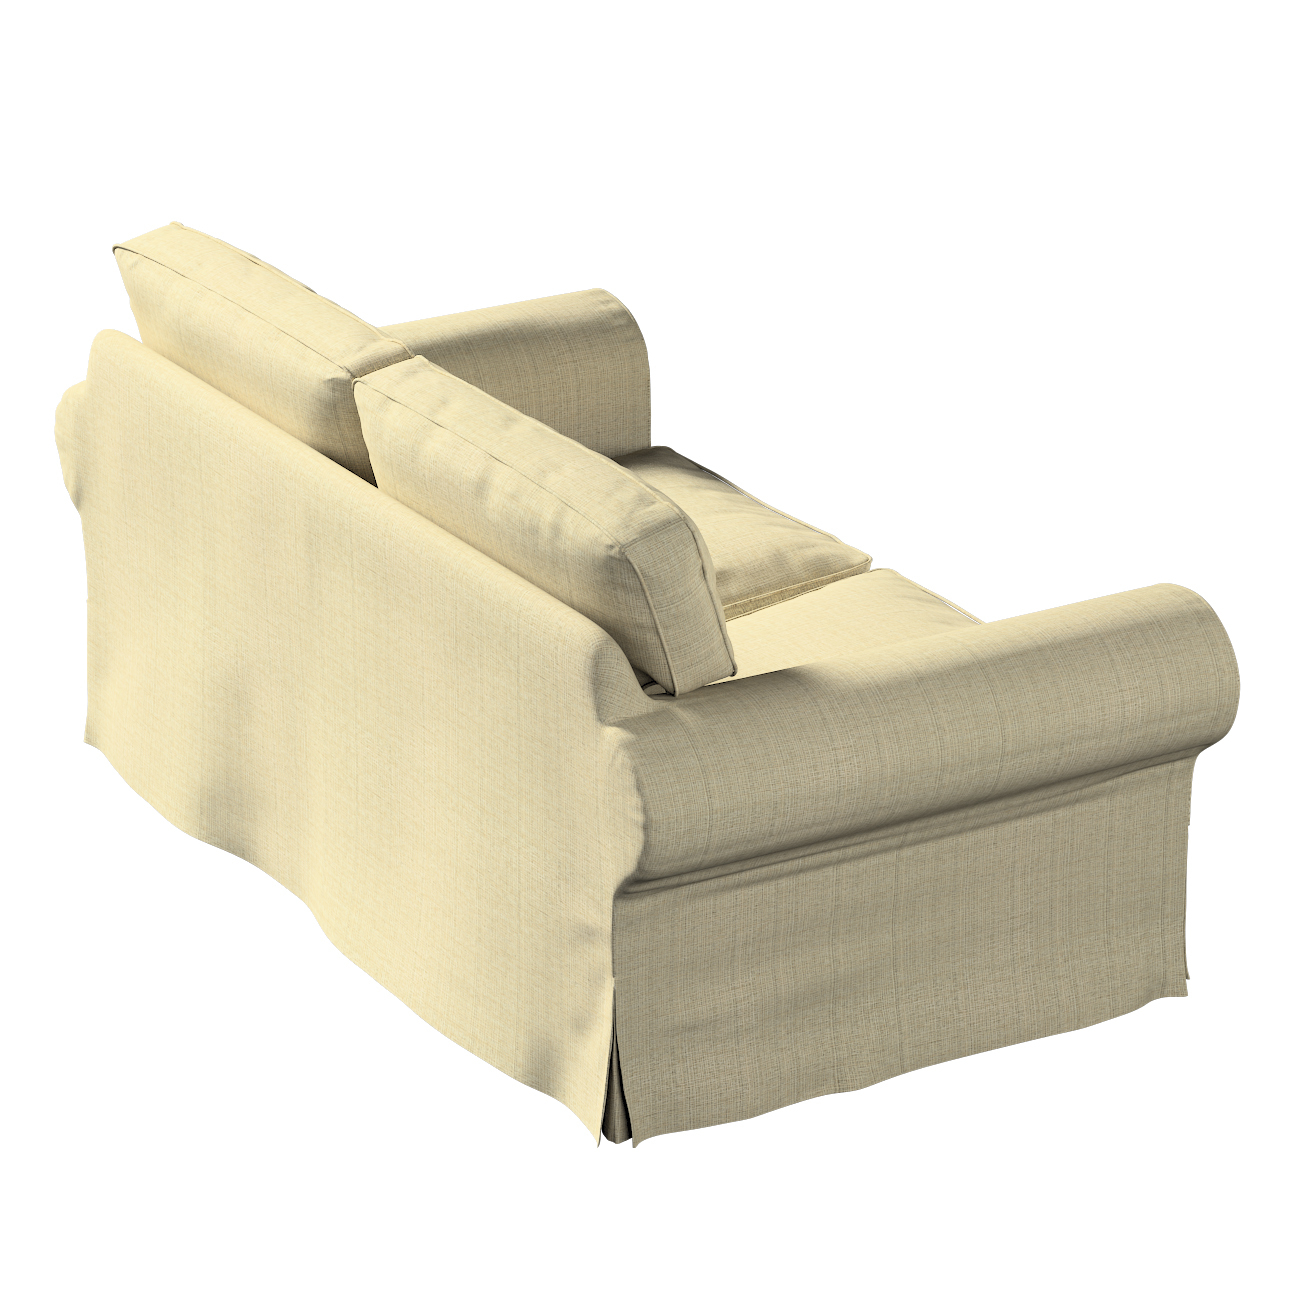 Bezug für Ektorp 2-Sitzer Schlafsofa ALTES Modell, beige-creme, Sofabezug E günstig online kaufen